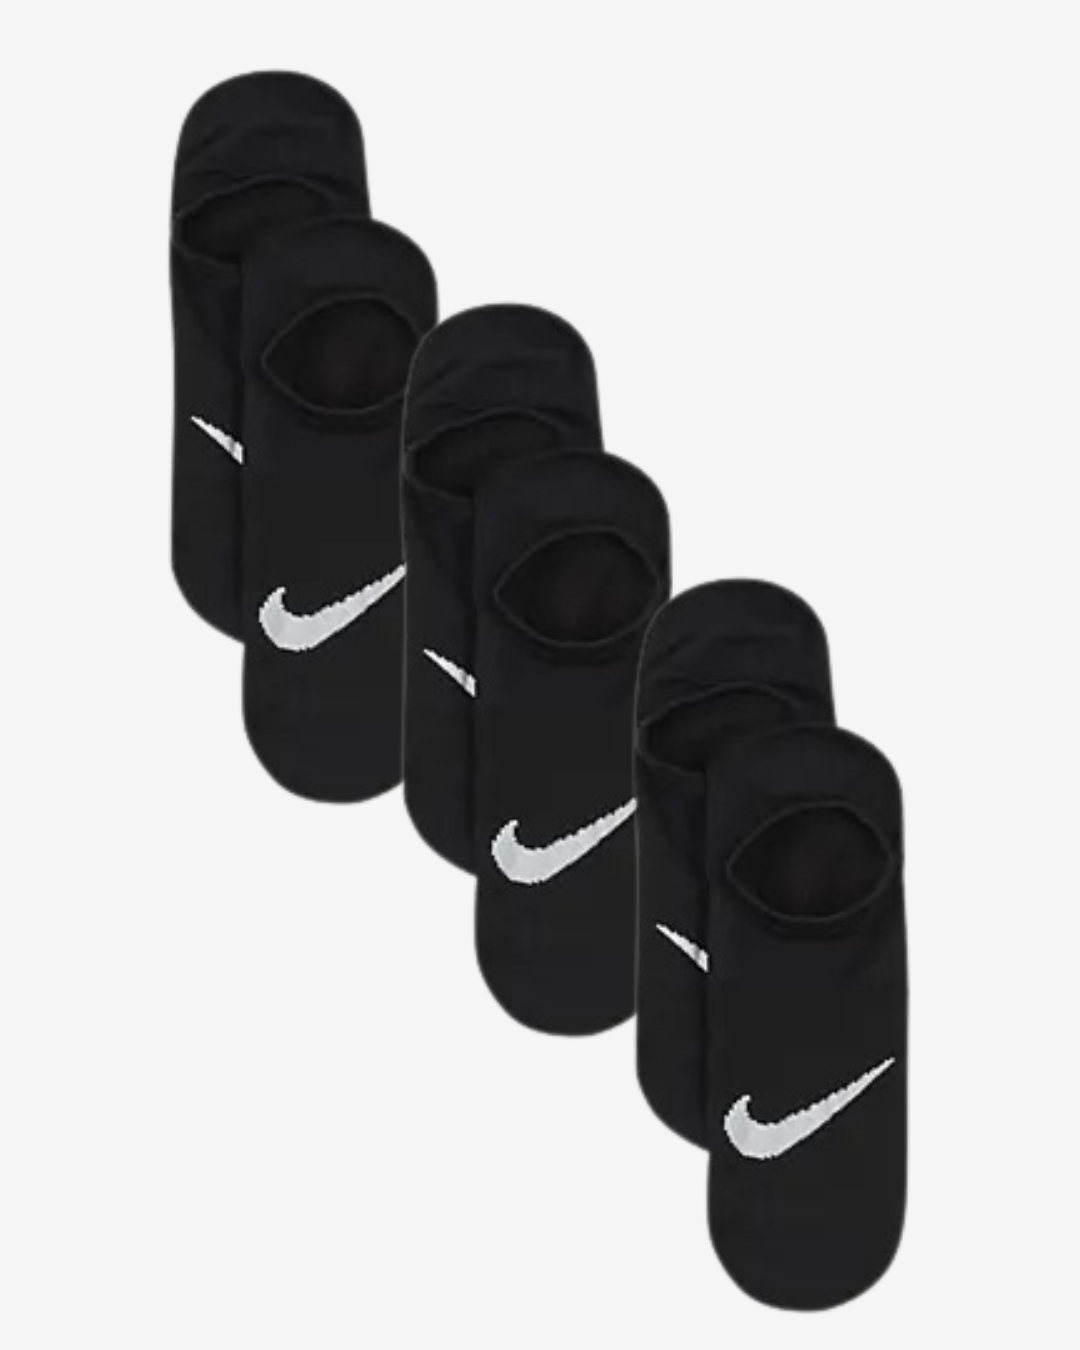 Nike Everyday dame ankelstrømper - Sort - Str. 42-46 - Modish.dk